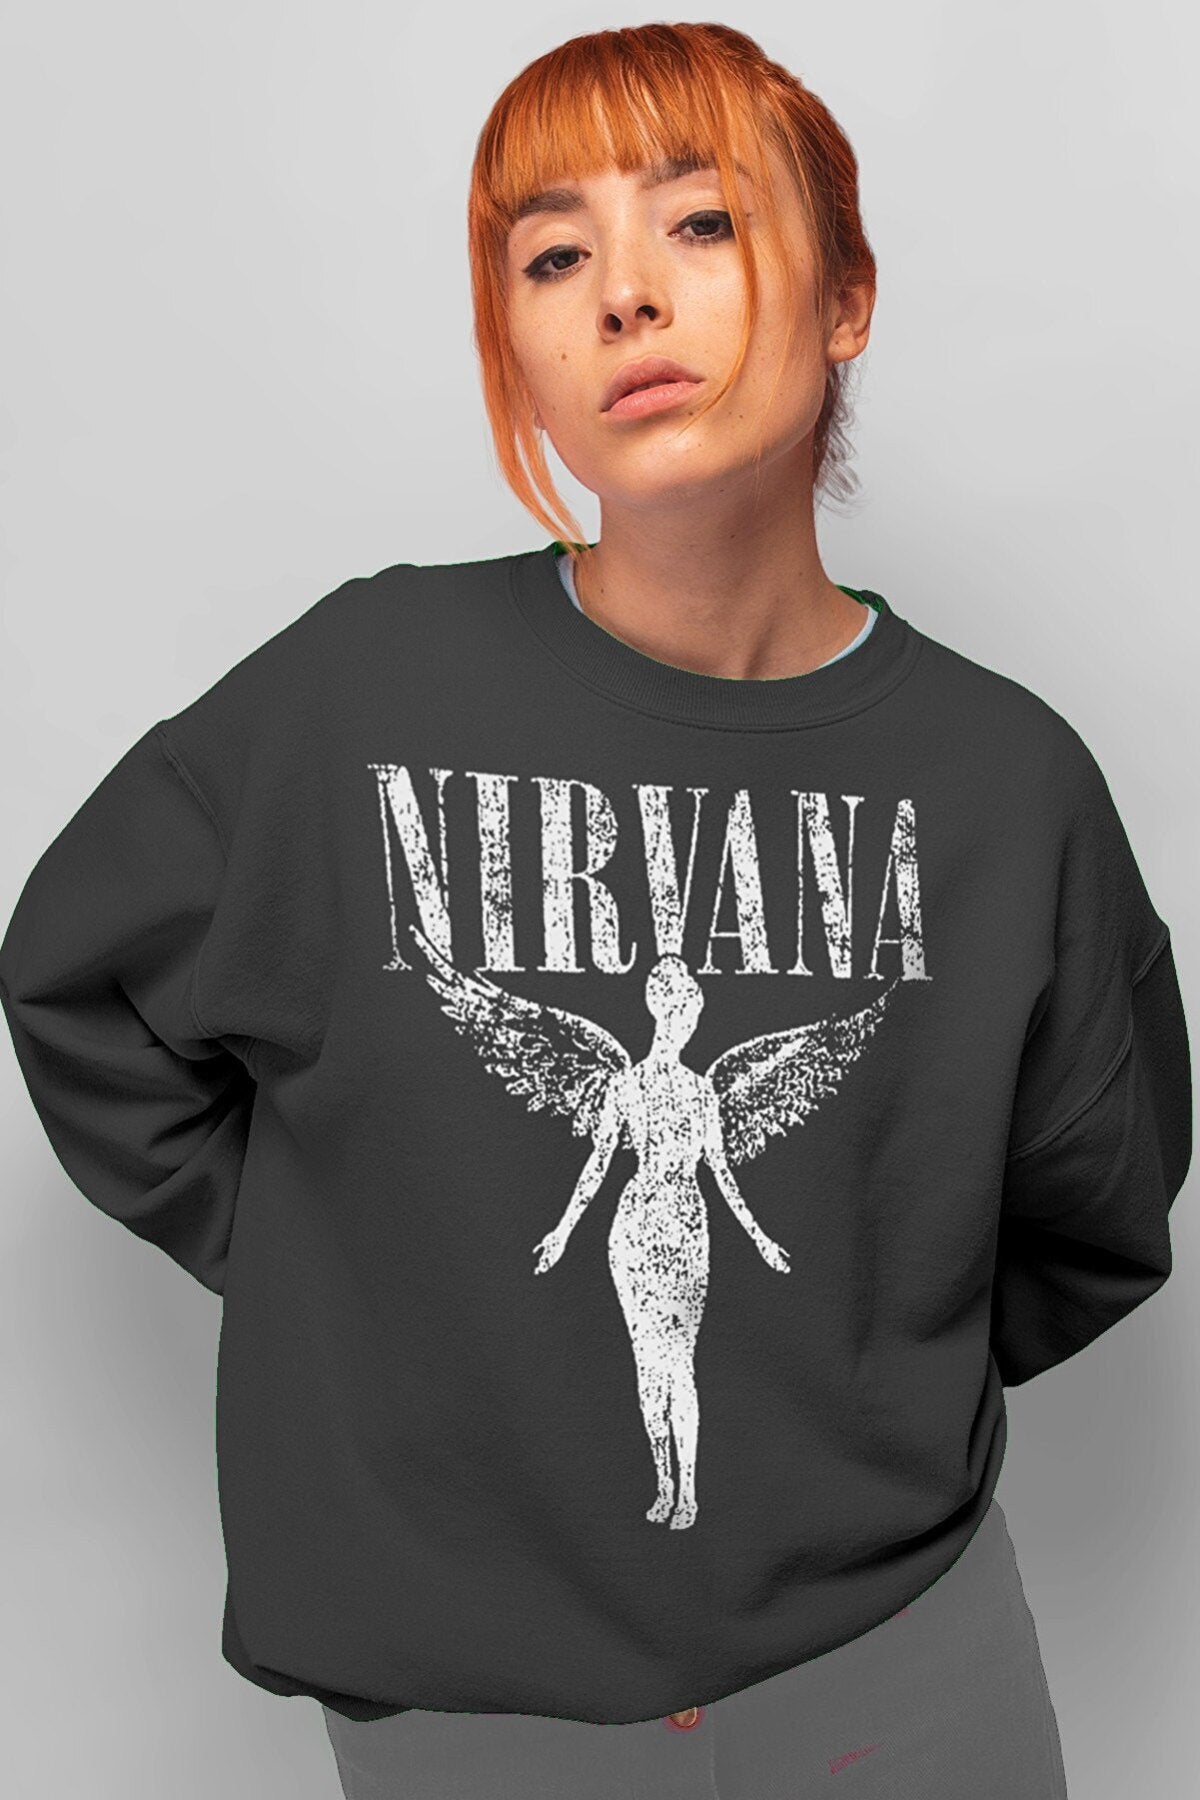 Women's White Angel Nirvana Hooded Sweatshirt